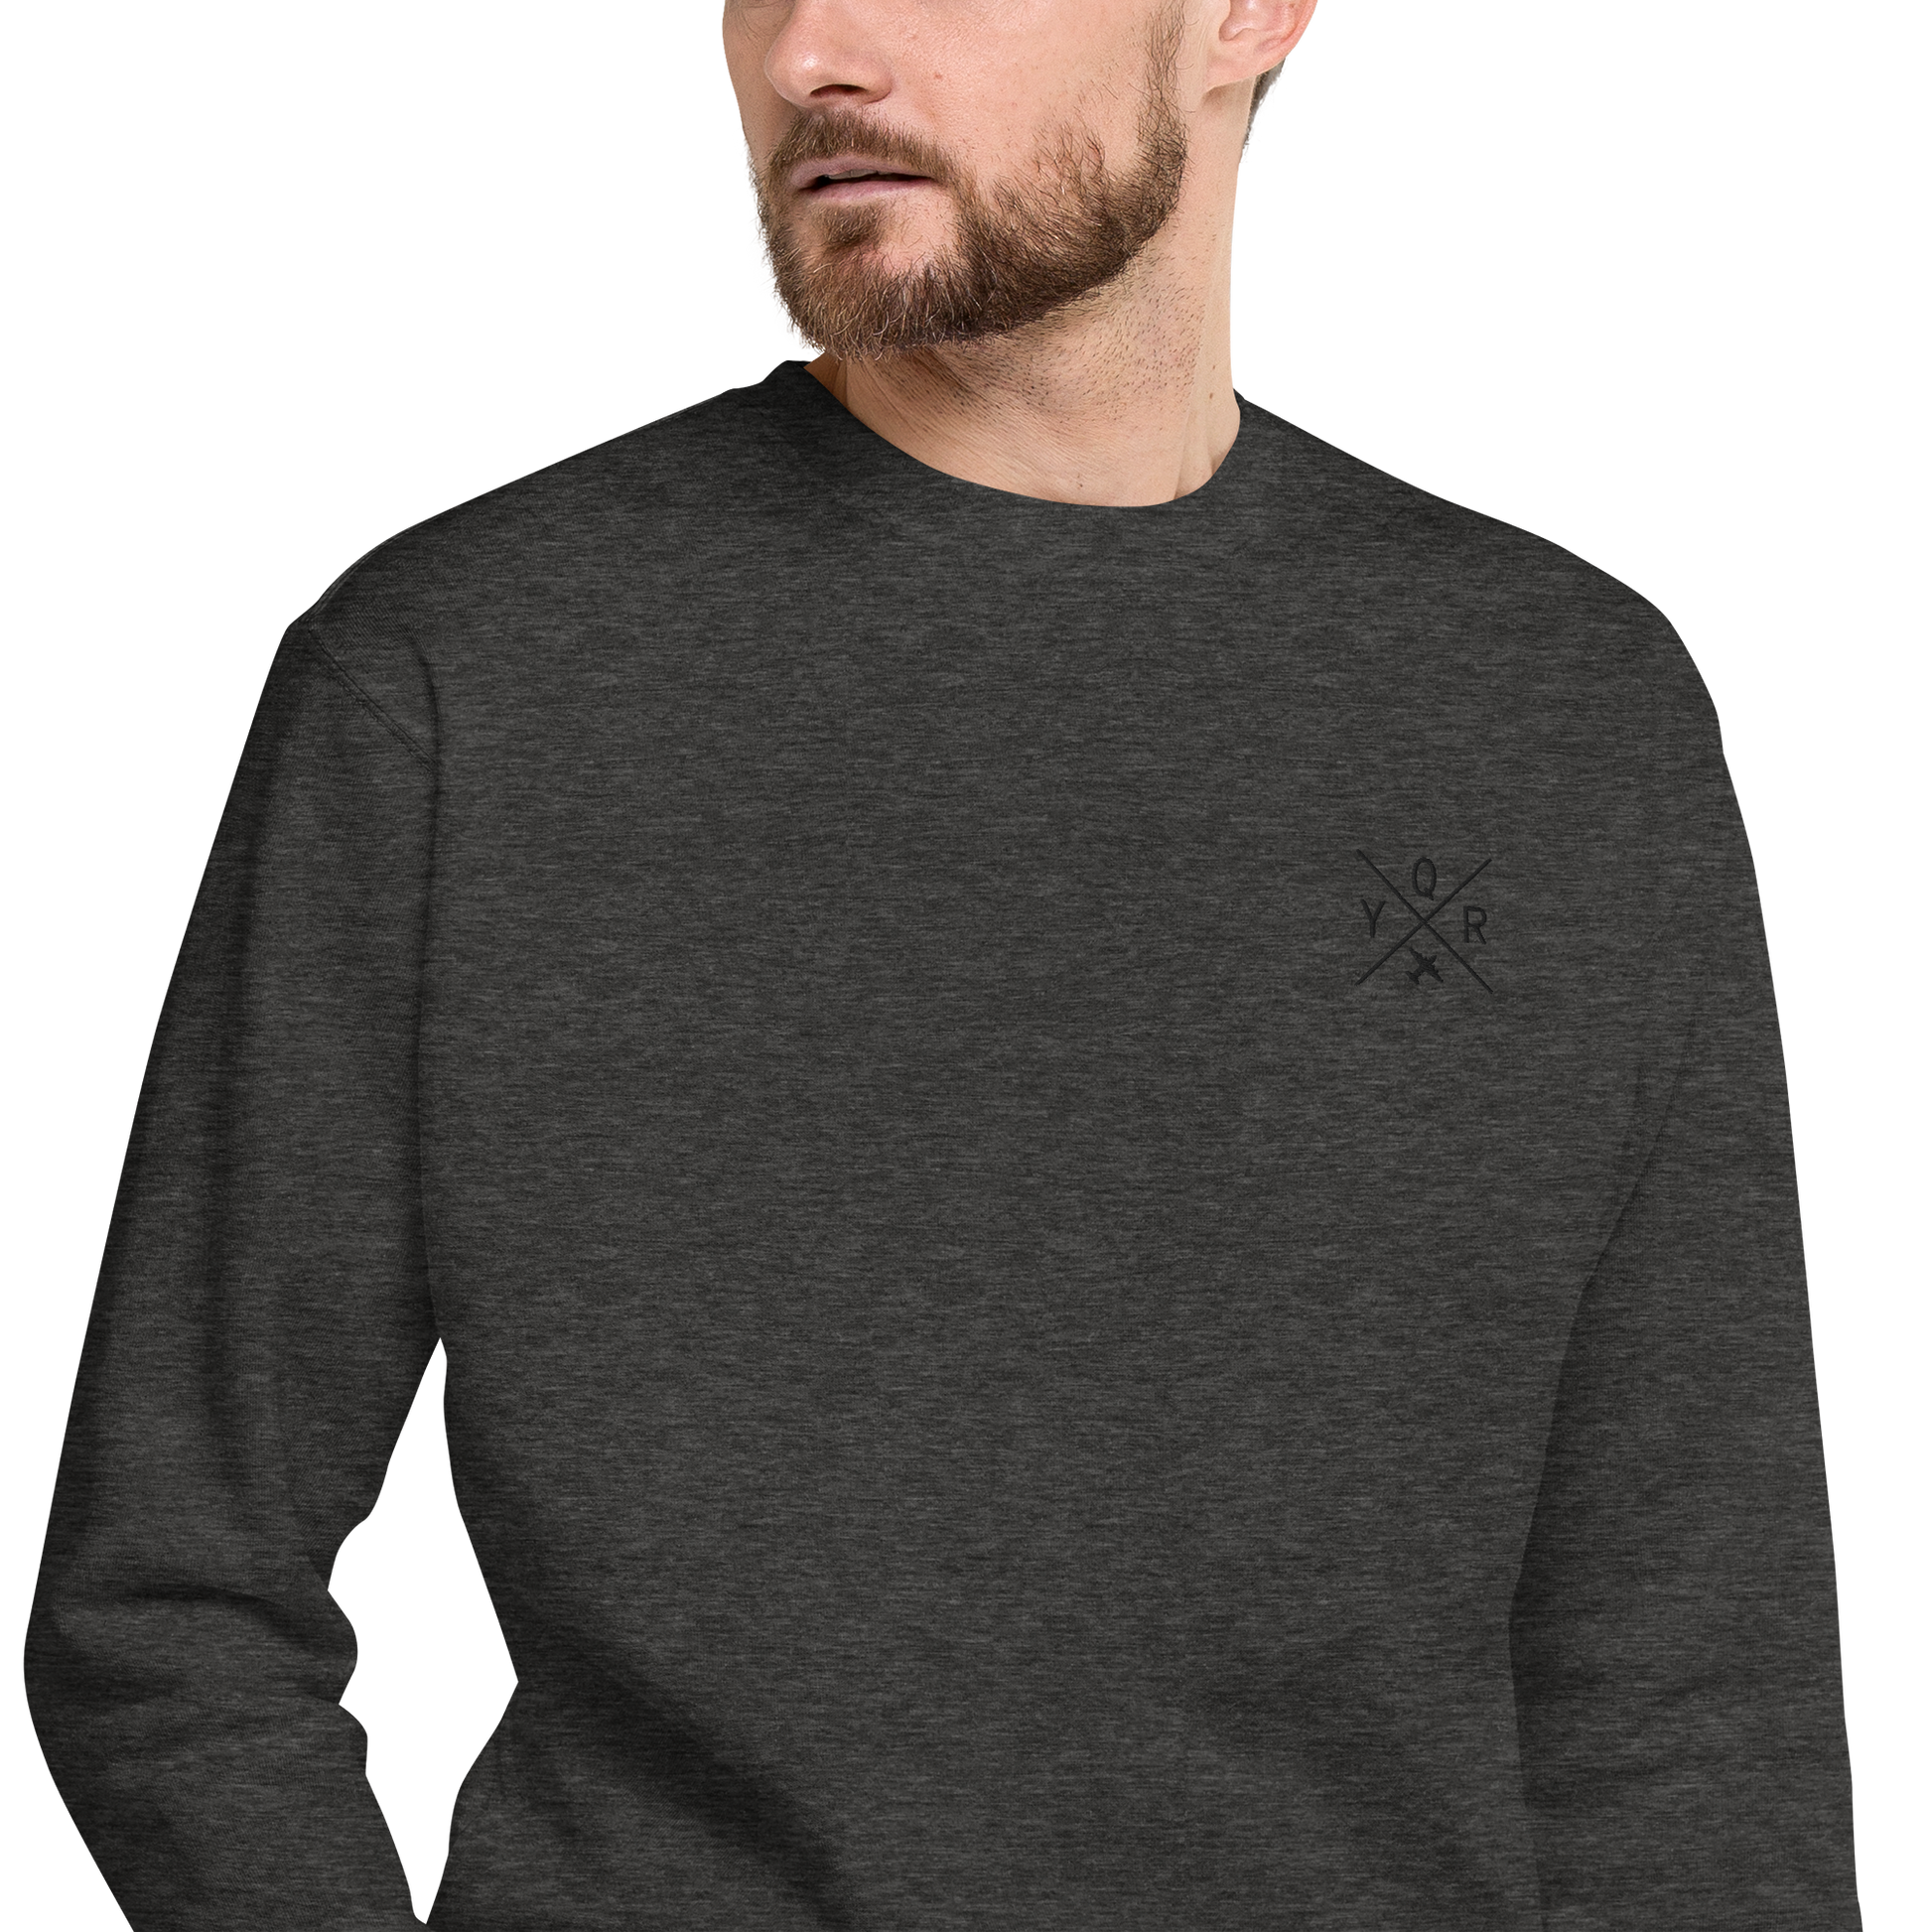 Crossed-X Premium Sweatshirt • YQR Regina • YHM Designs - Image 07